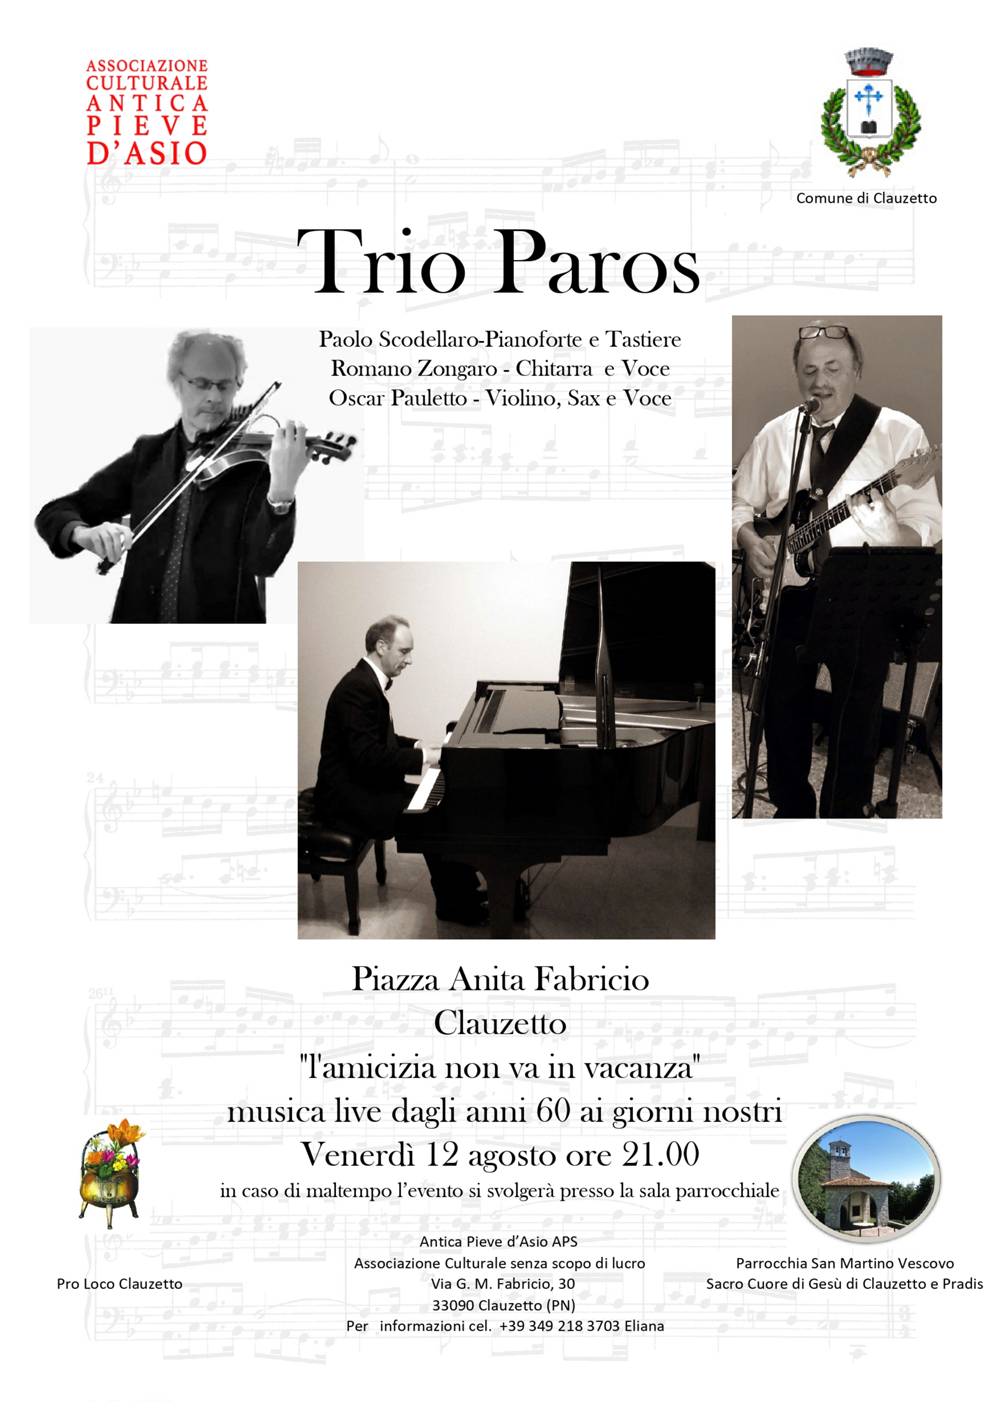 L'amicizia non va in vacanza - Trio Paros in concerto